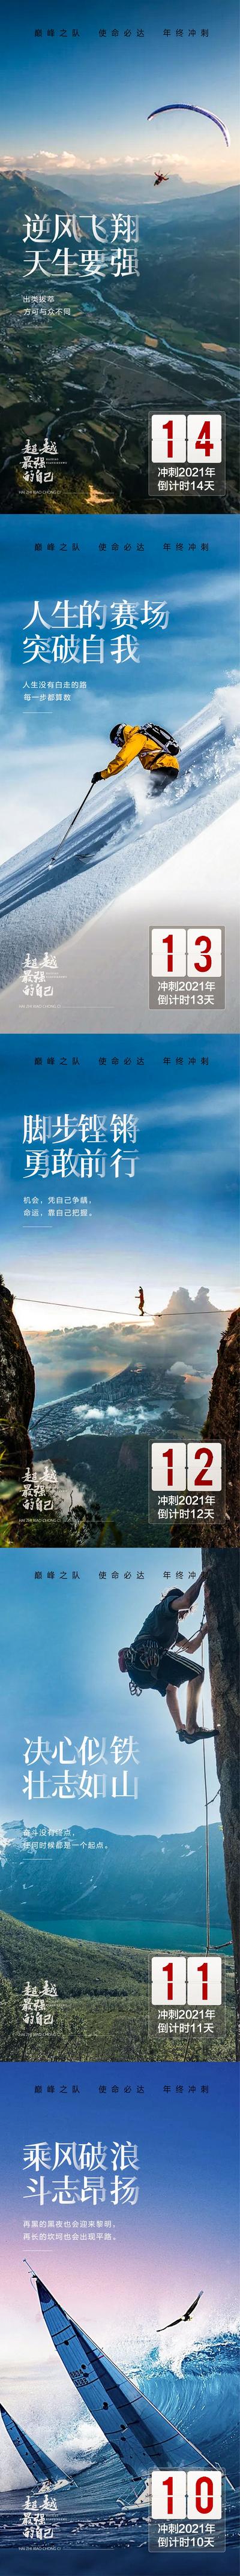 南门网 海报 地产 年终冲刺 倒计时 跳伞 攀登 风景 热销 系列